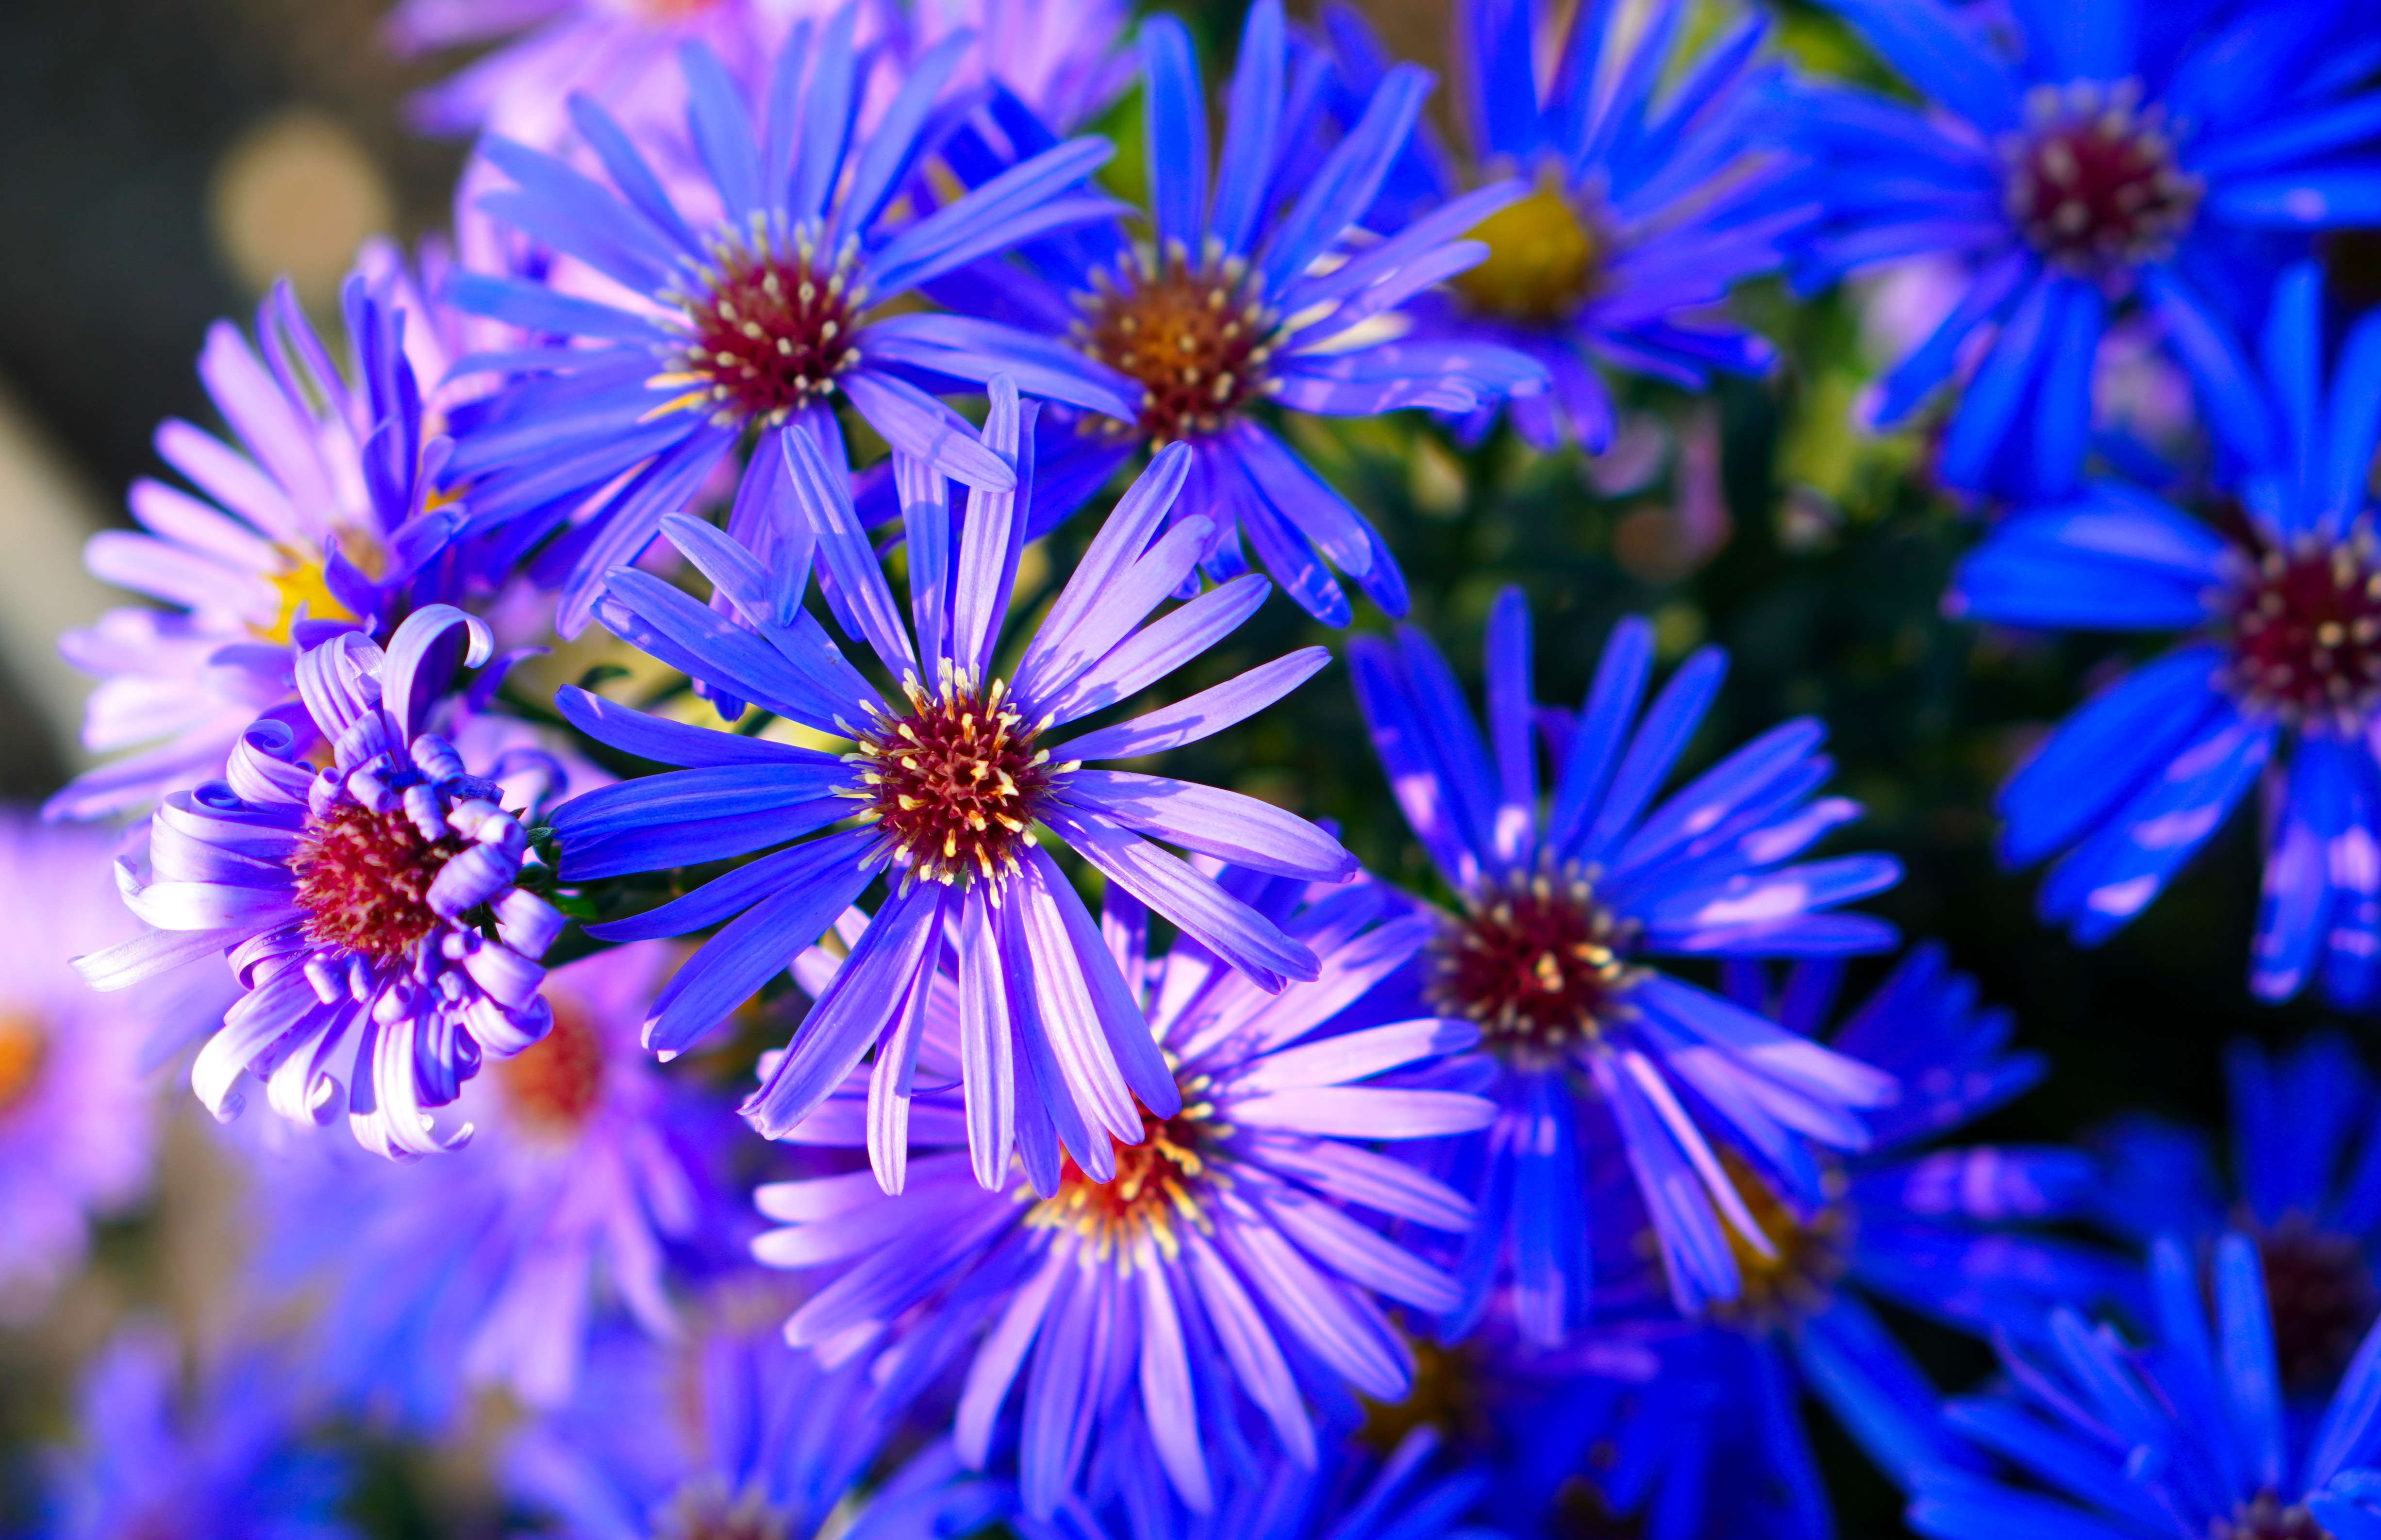 Обои для рабочего стола Синий Астры Цветы Много Крупным планом 4905x3173 синяя синие синих цветок вблизи